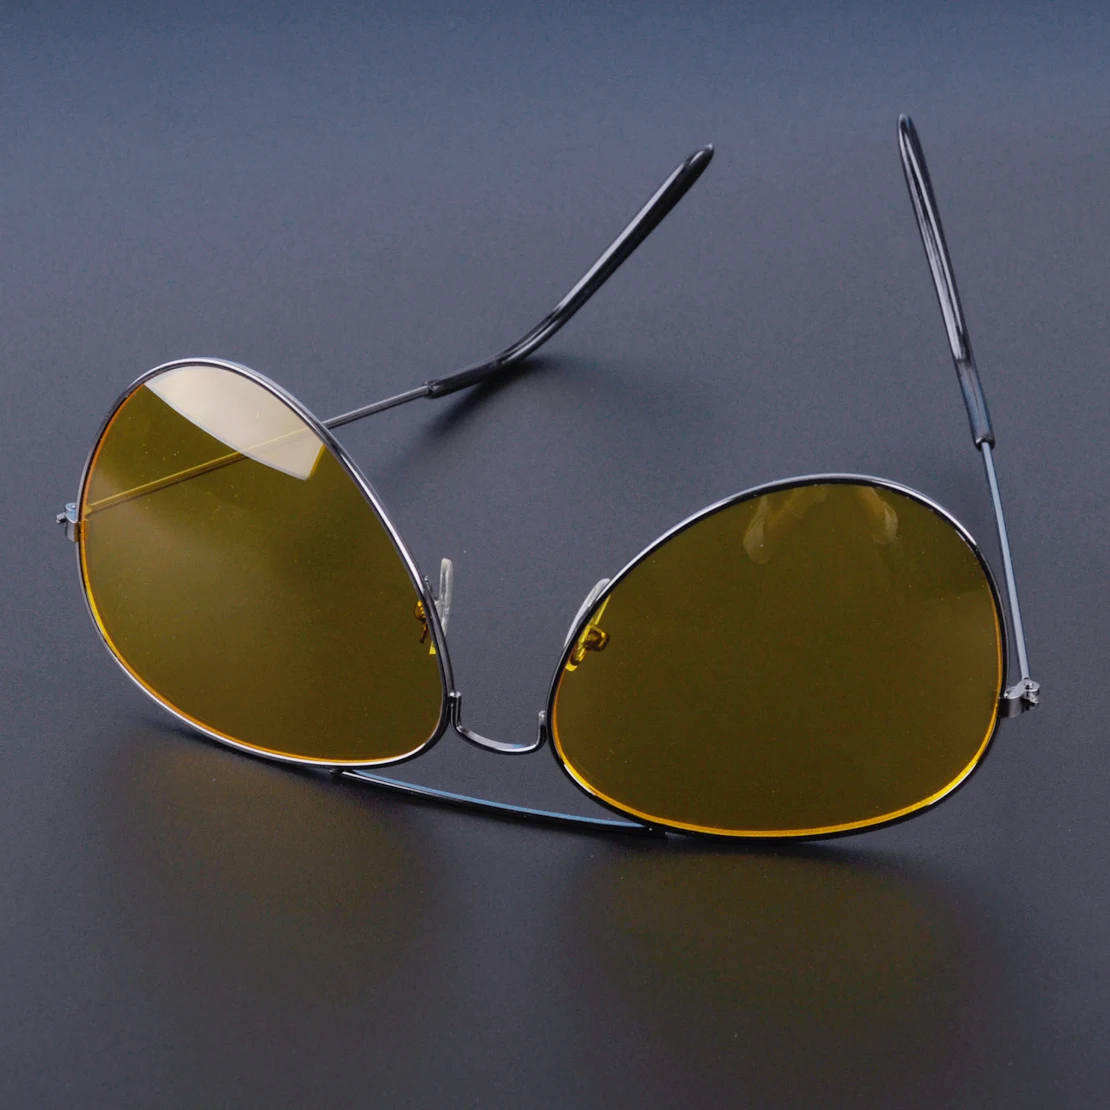 Beler автомобиль мода ночного вождения очки Анти-яркий видение водителя безопасности солнцезащитные очки глаз носить защитные очки